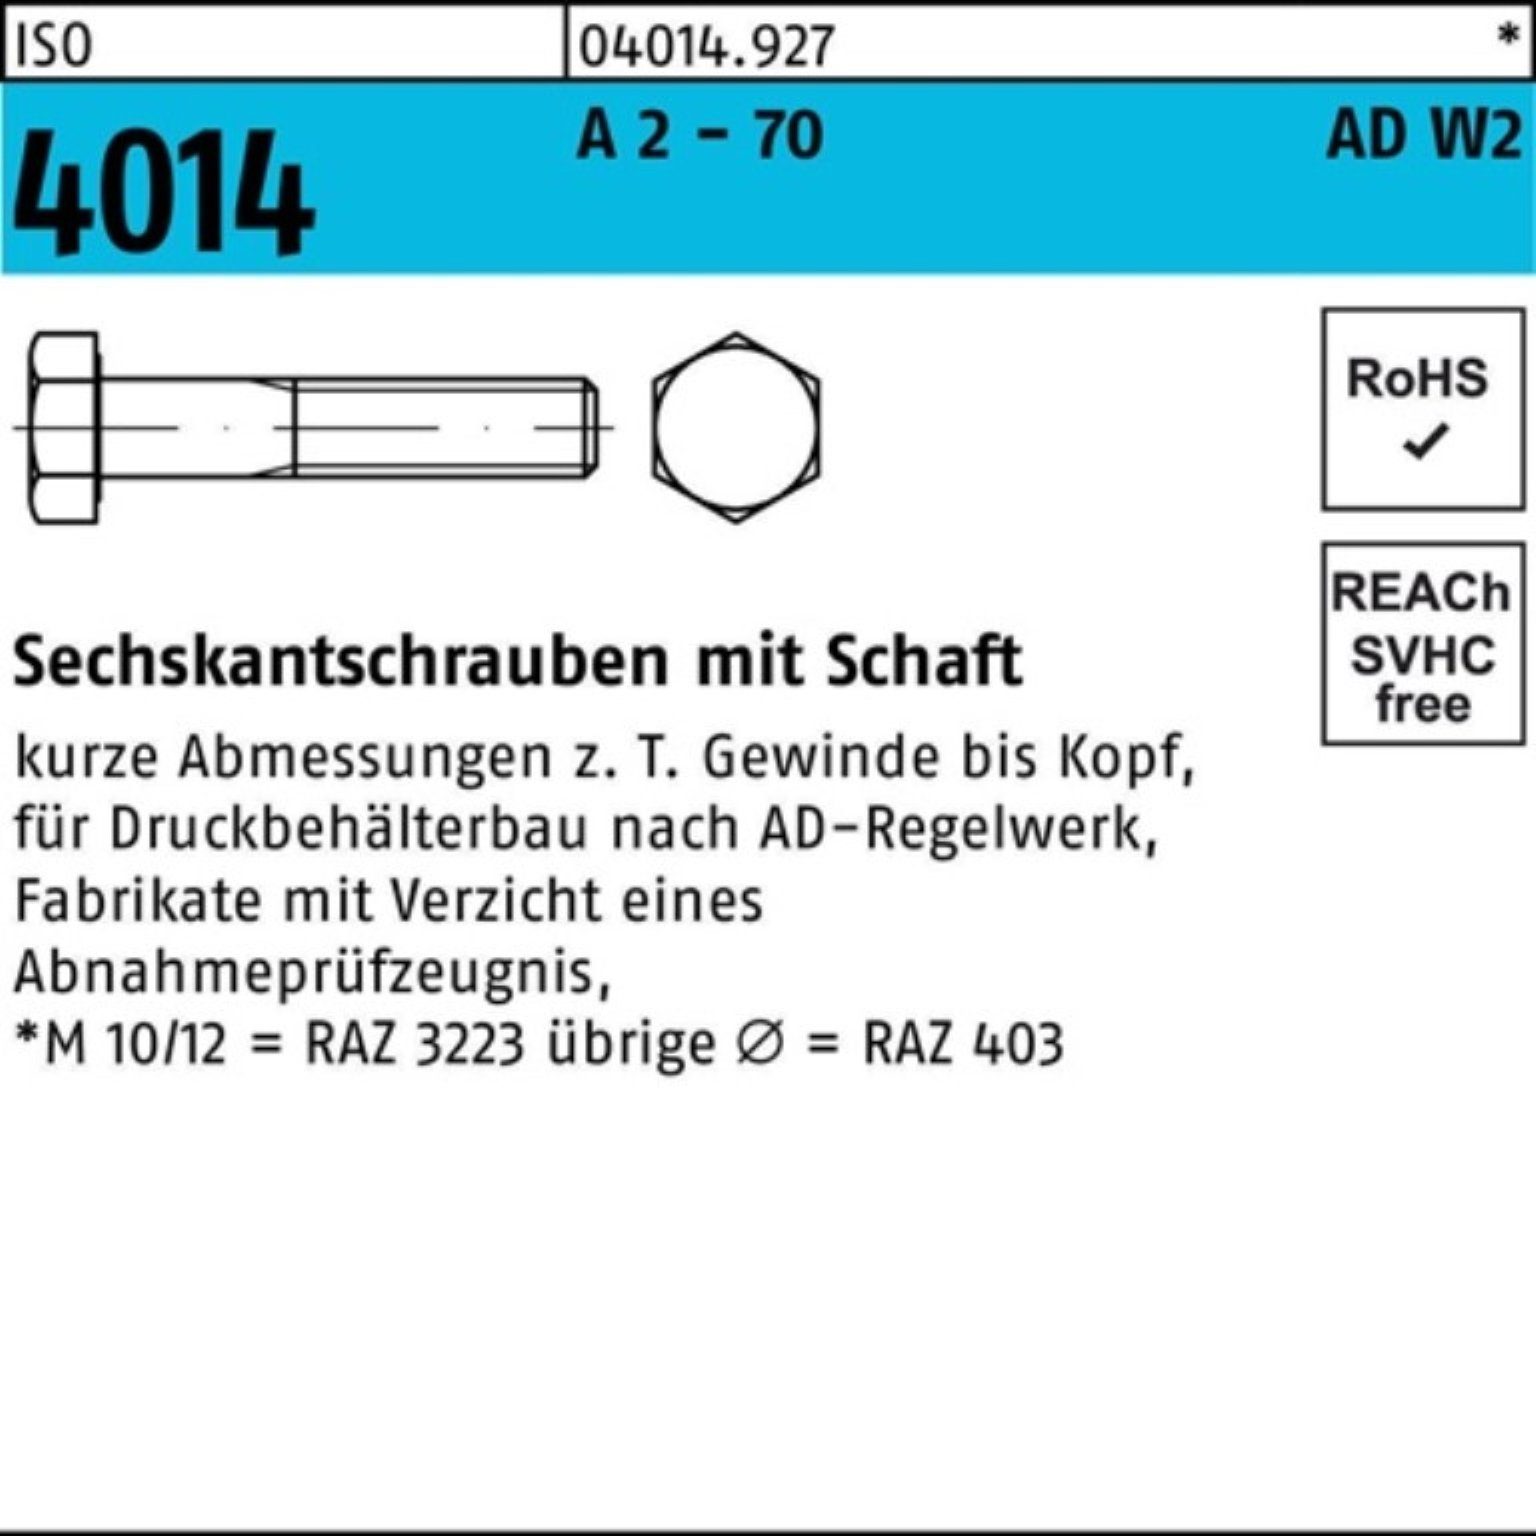 2 - Bufab 2 Pack Sechskantschraube 100er 100 ISO Schaft Sechskantschraube 70 AD-W2 4014 A M12x